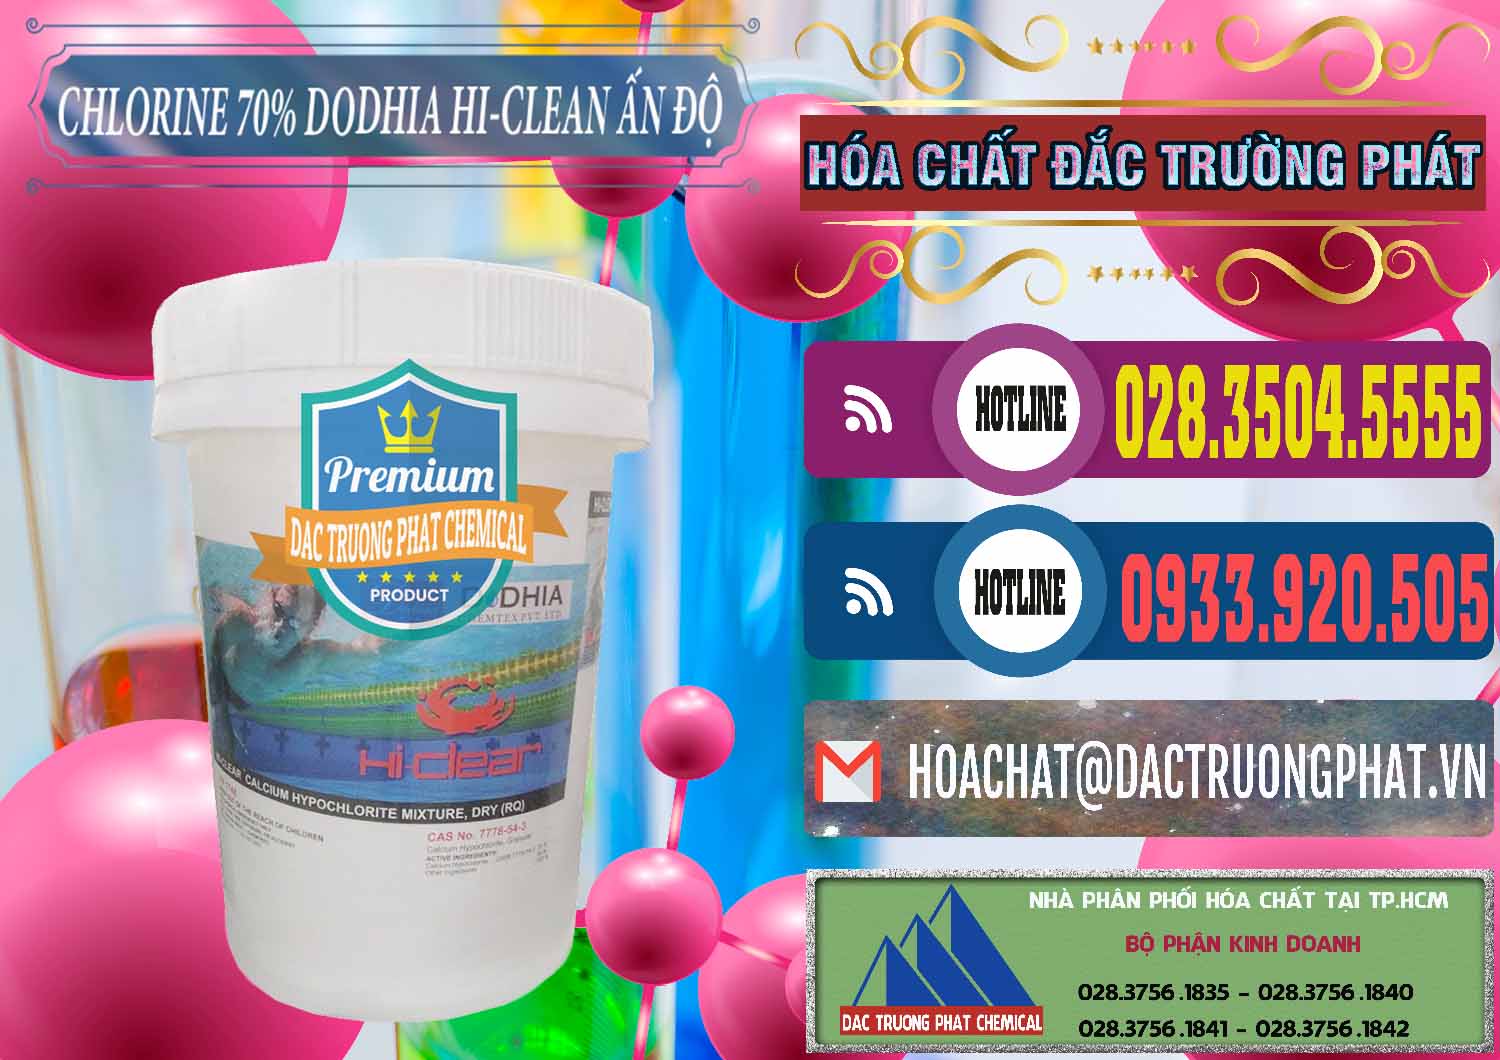 Nơi chuyên phân phối - bán Chlorine – Clorin 70% Dodhia Hi-Clean Ấn Độ India - 0214 - Nhà cung cấp và kinh doanh hóa chất tại TP.HCM - muabanhoachat.com.vn